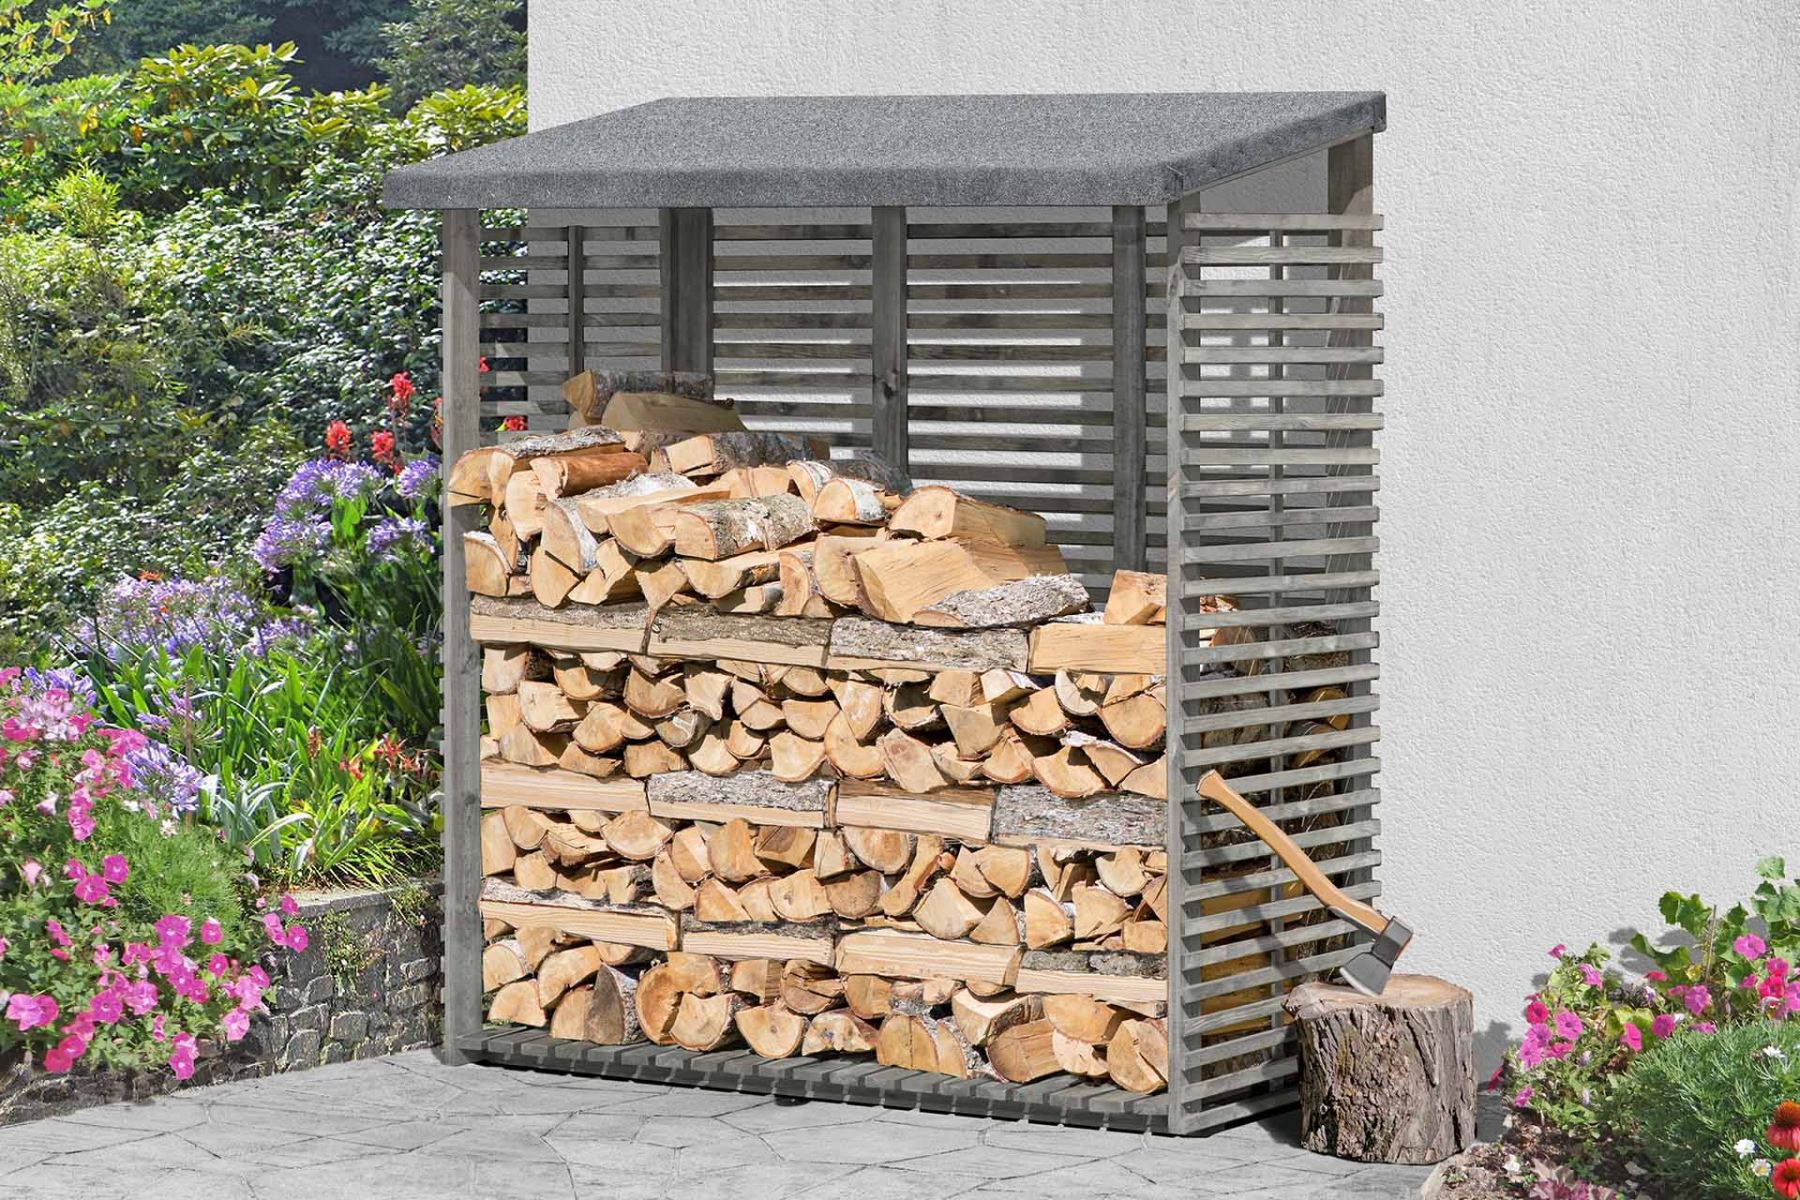 Abri pour bois de chauffage M205 - 3.64 m2